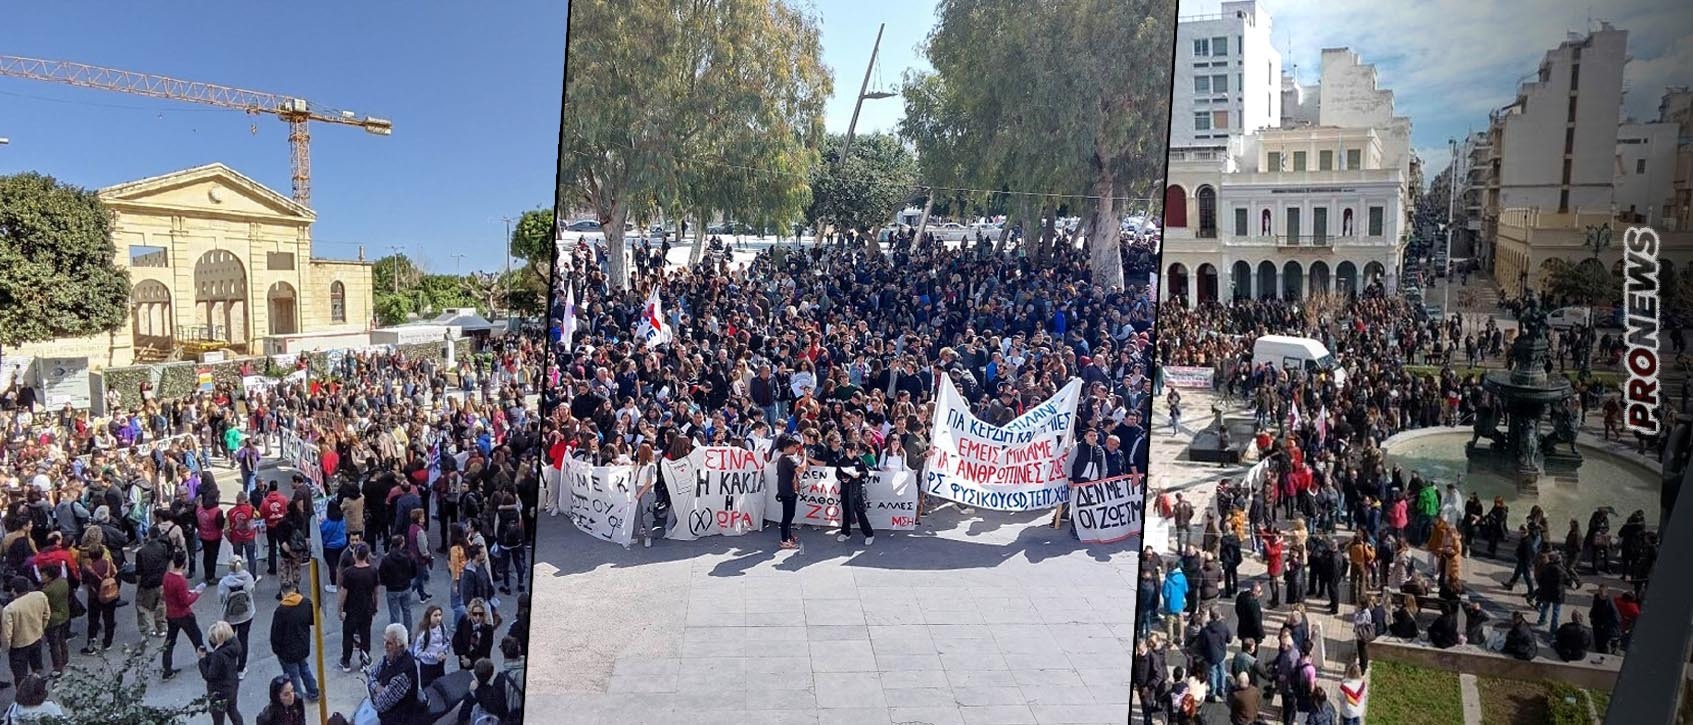 «Οργή λαού» στις συγκεντρώσεις διαμαρτυρίας σε Αθήνα, Πάτρα, Χανιά και Λιβαδειά για το έγκλημα των Τεμπών – Δυναμική η παρουσία μαθητών-φοιτητών (βίντεο)